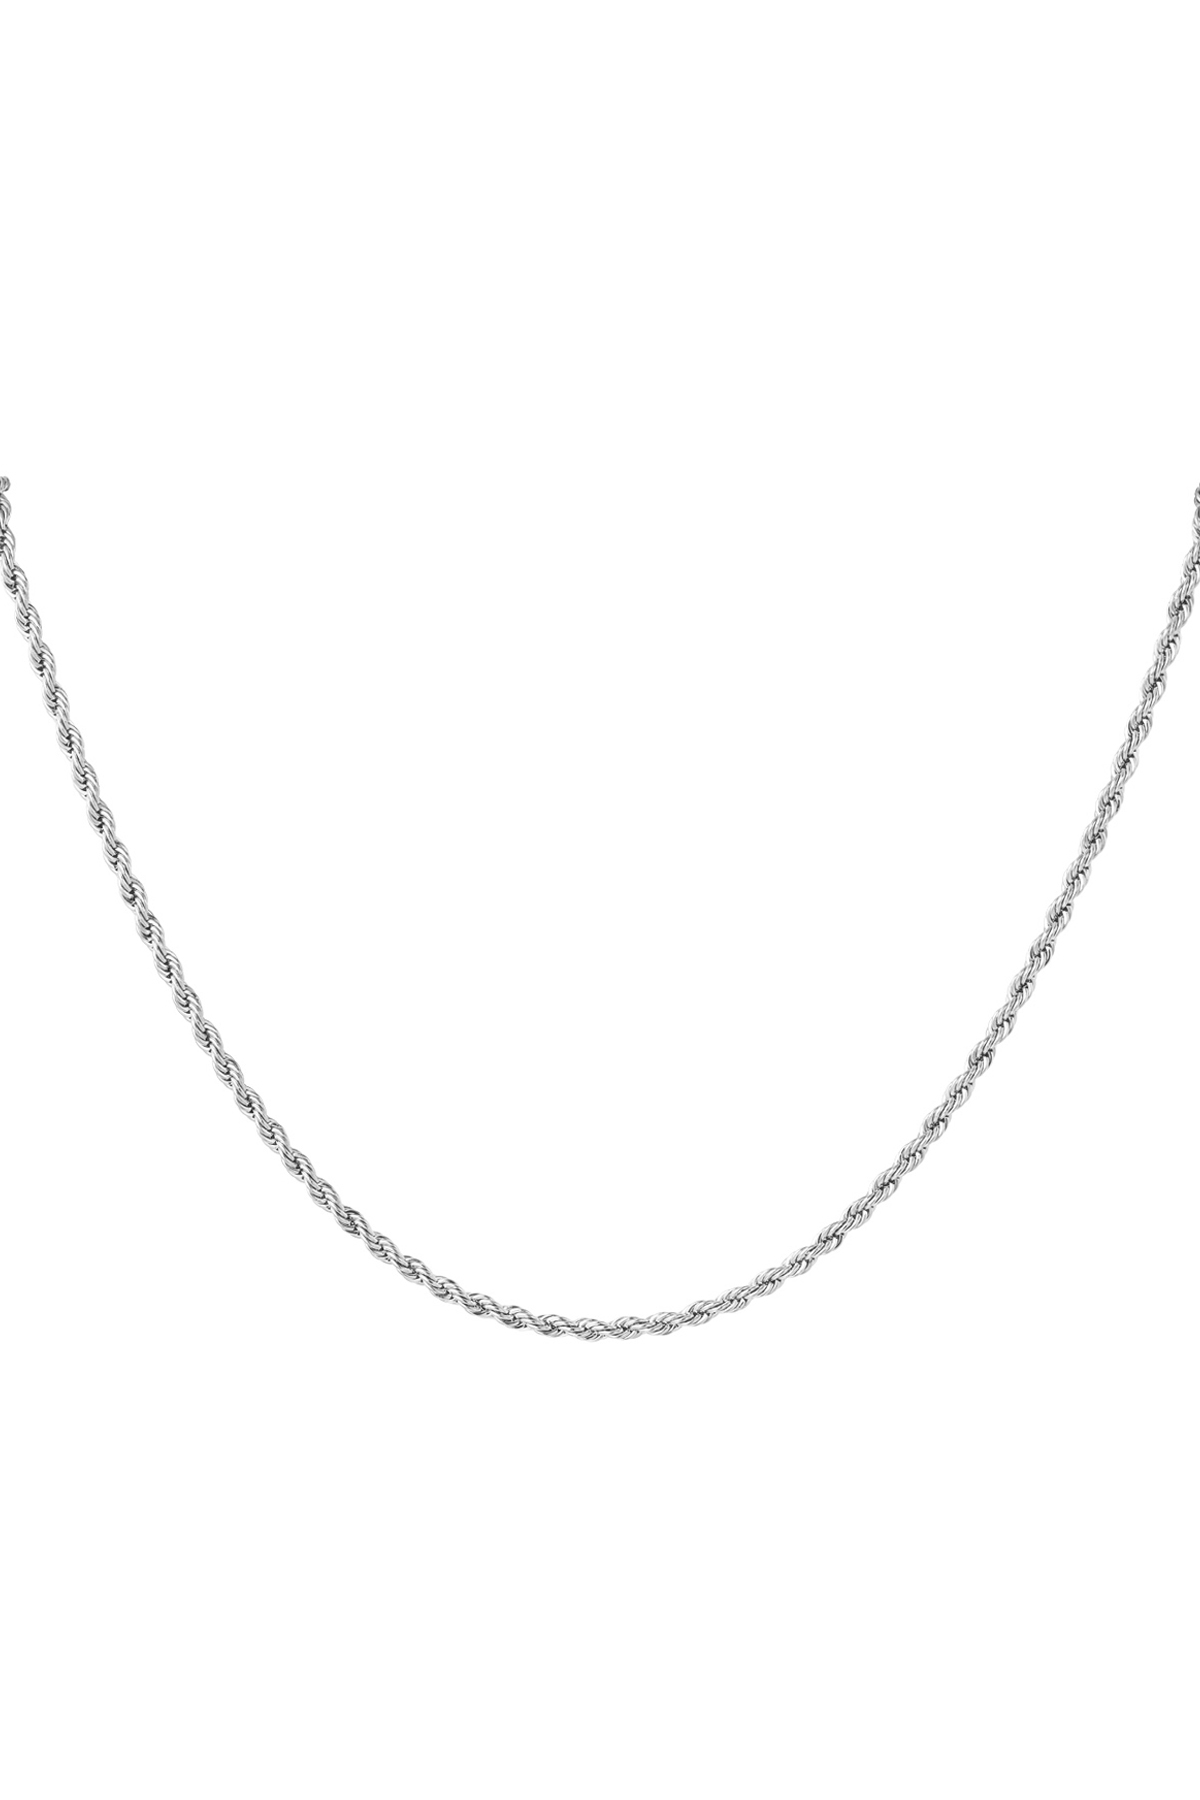 Unisex Halskette fein gedreht - Silber - 3,0 MM h5 